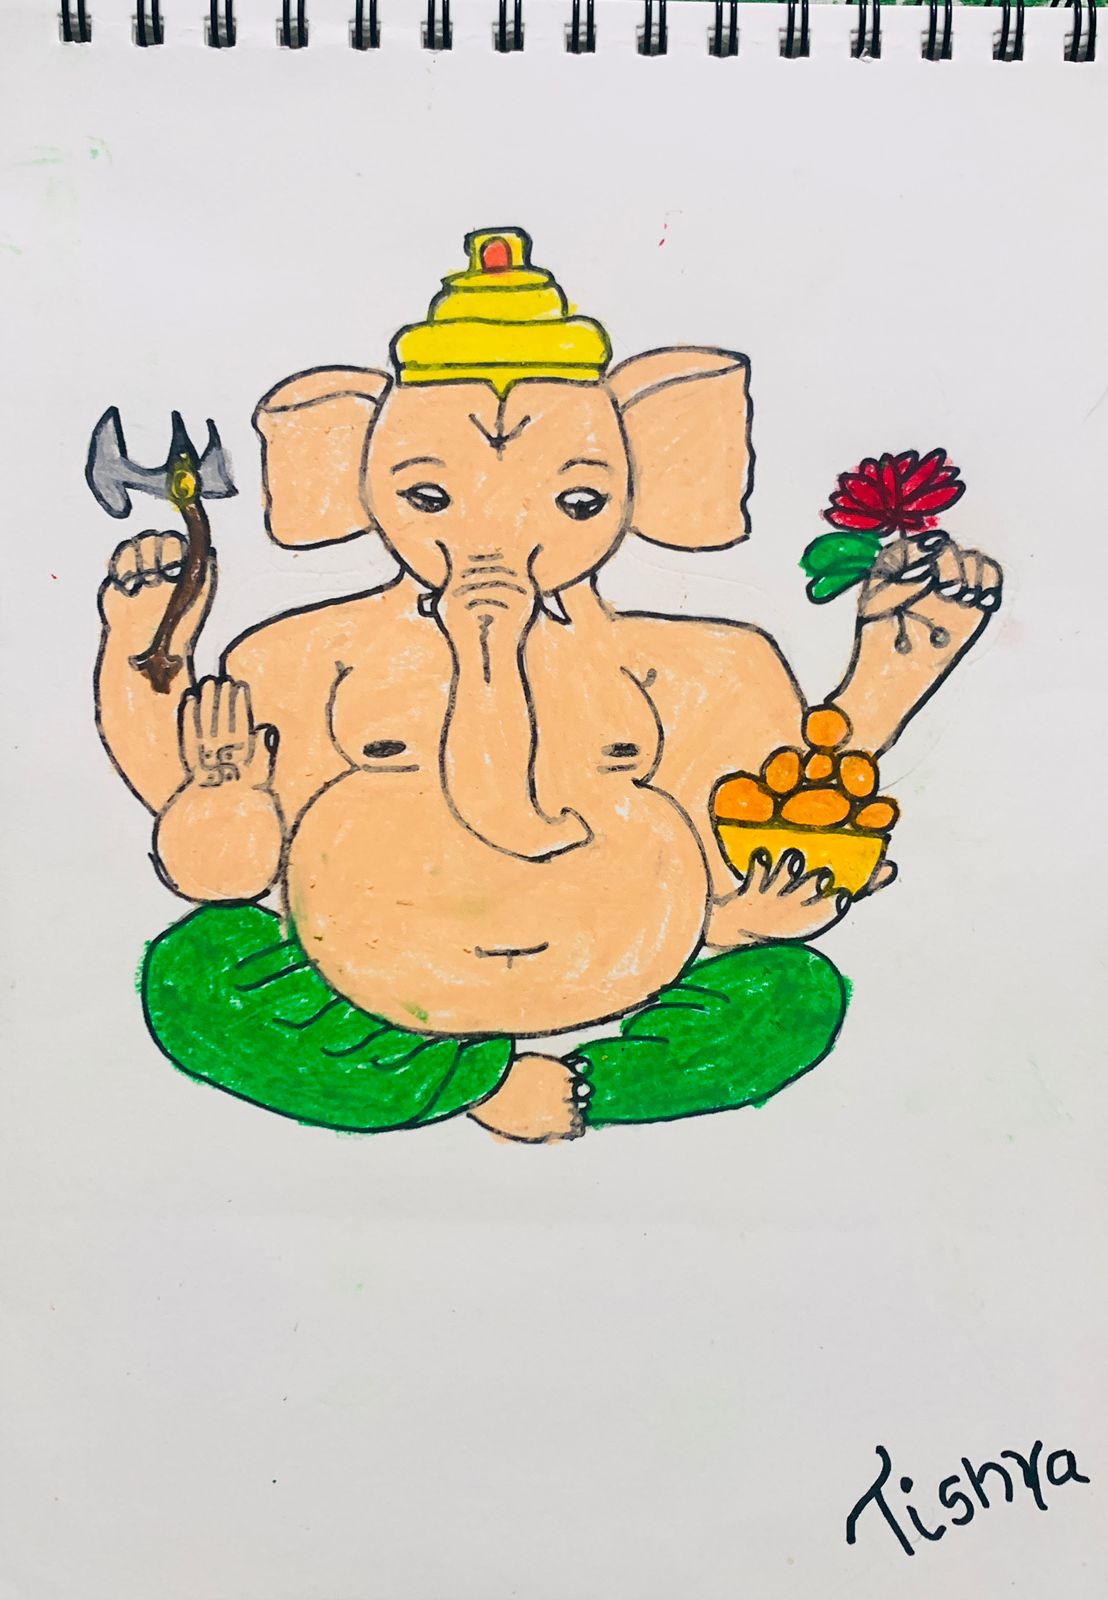 Lord Ganesha - Drawing Skill